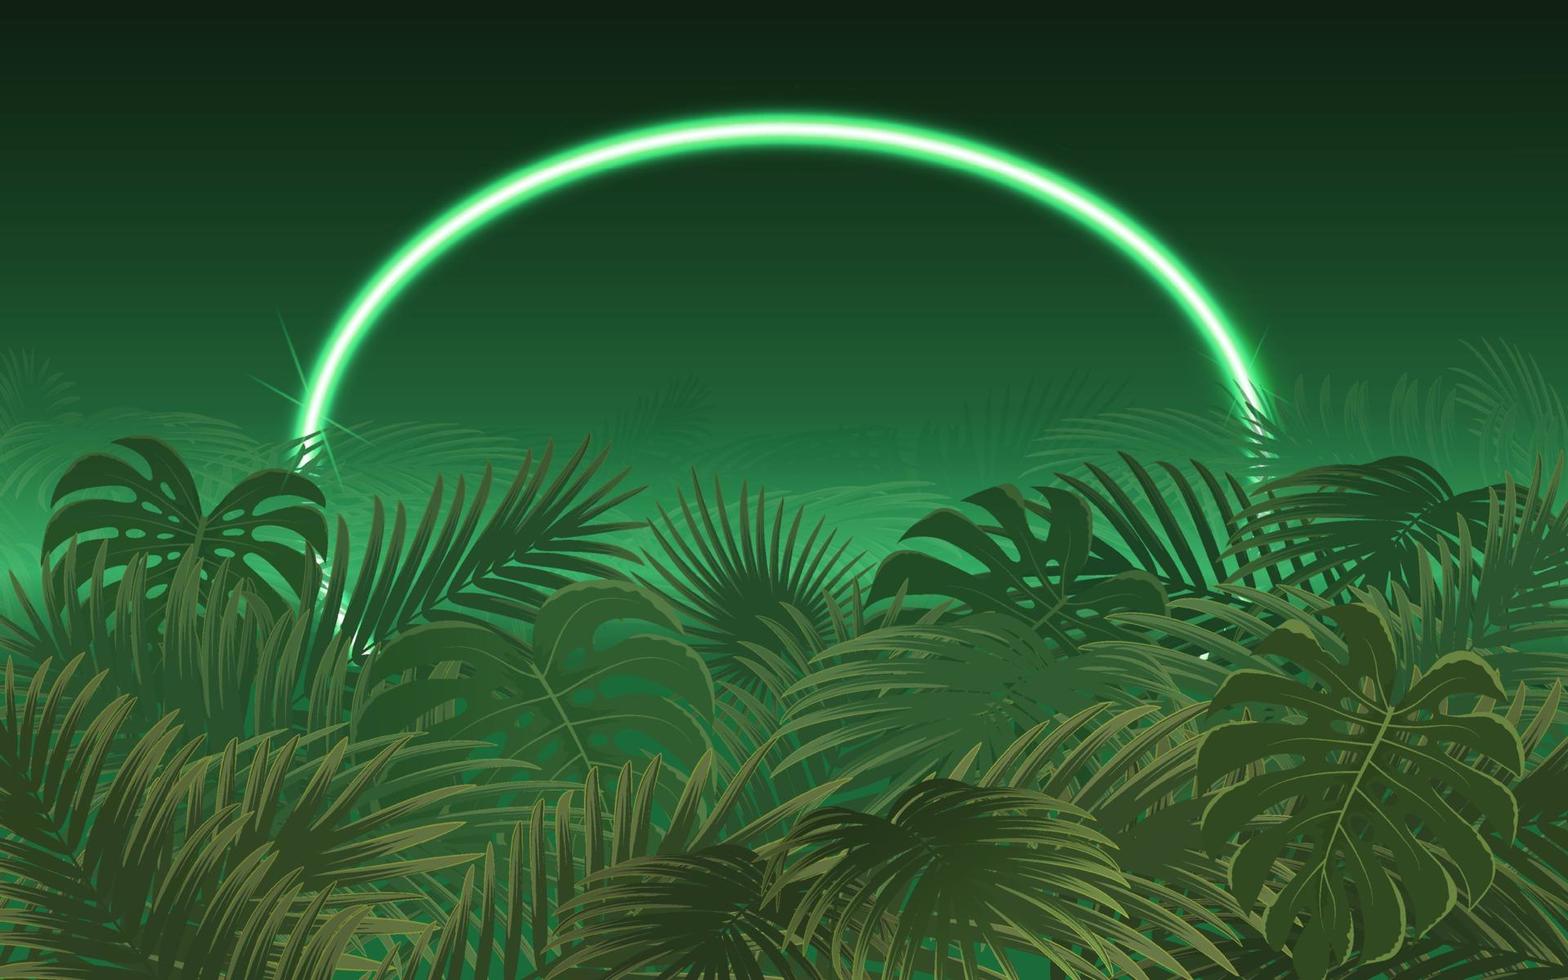 feuille de palmier tropical lumineux avec cadre néon vecteur